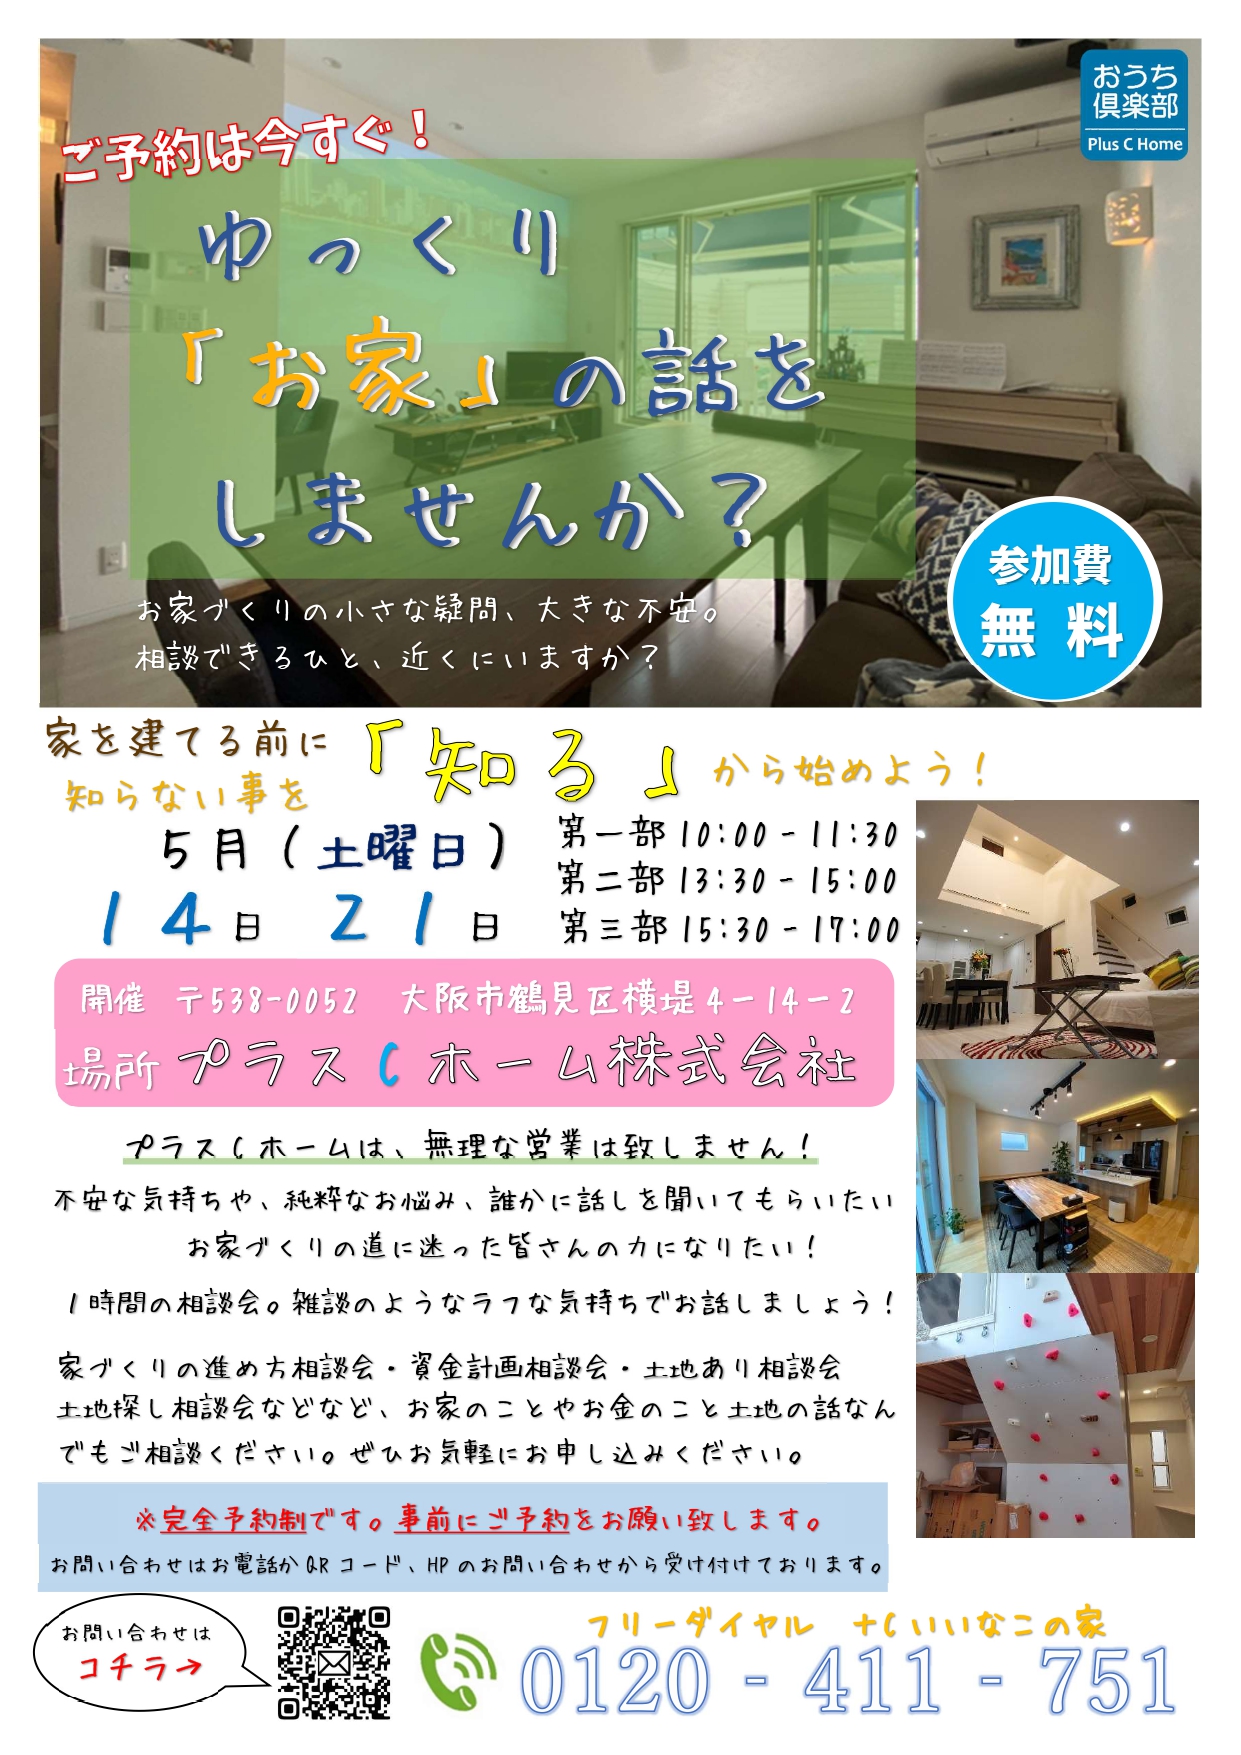 大阪市鶴見区で高断熱・高気密住宅を建てております工務店Plus C Homeがお話会を開催します♪